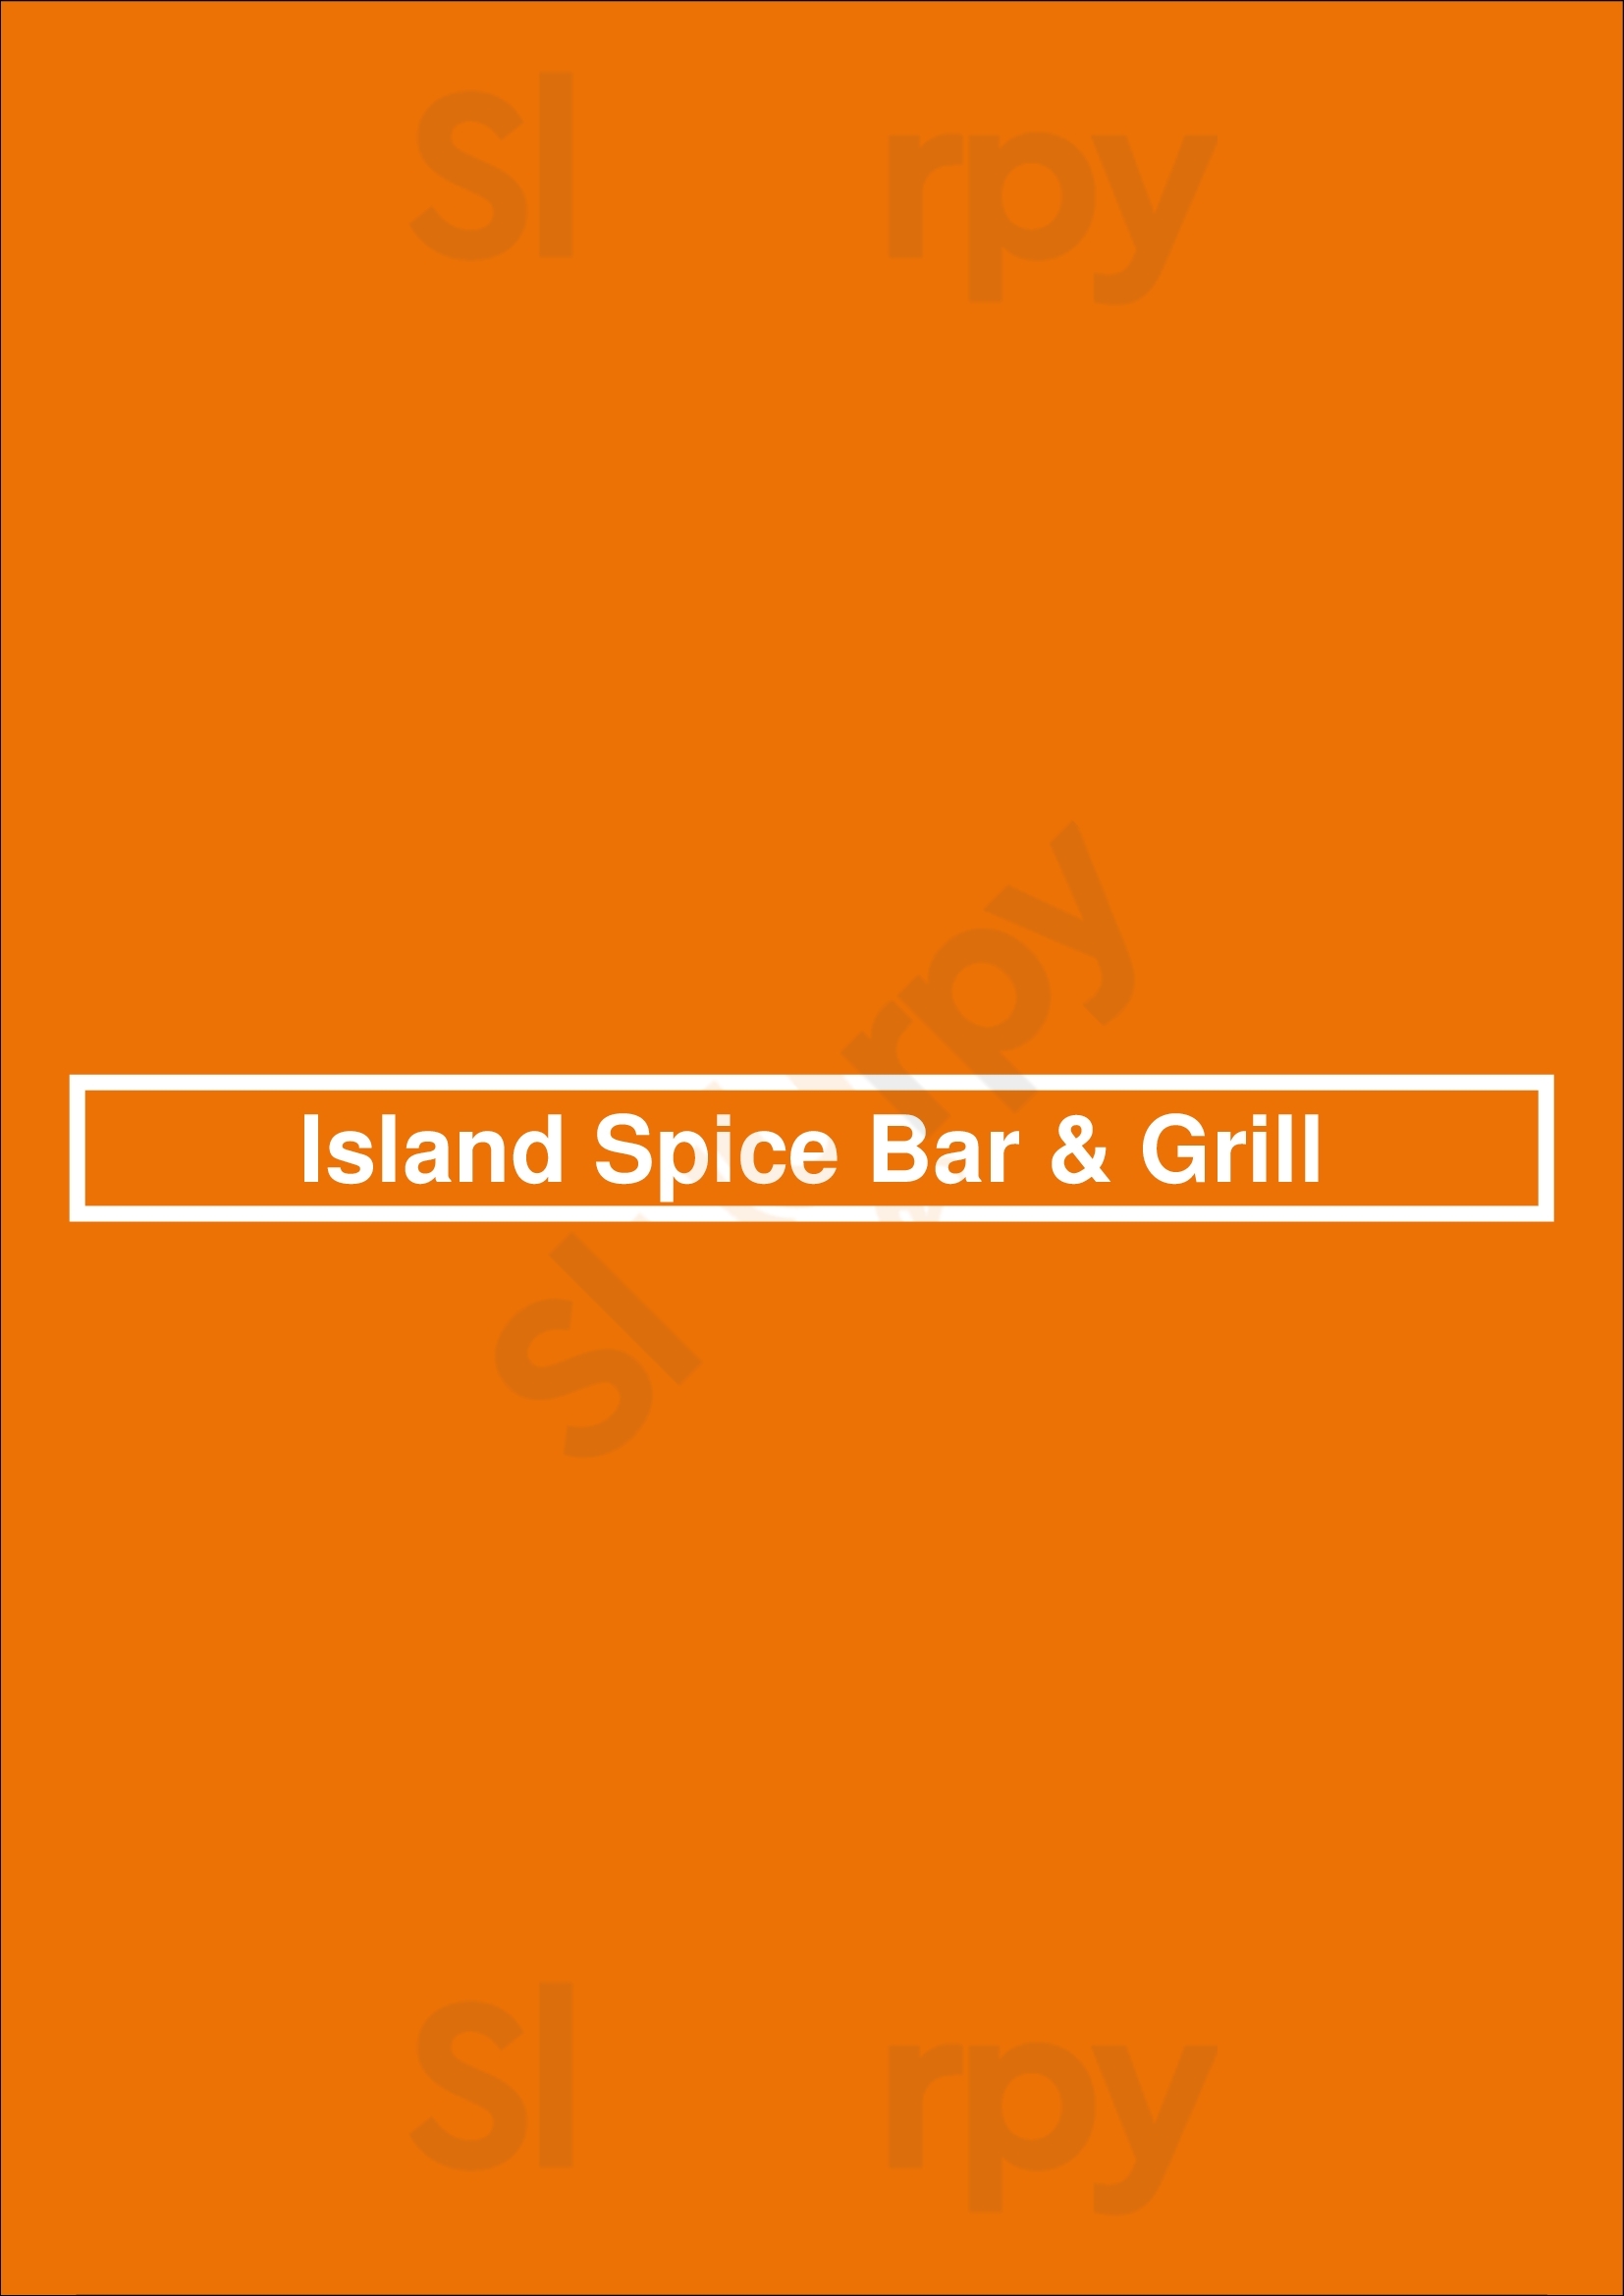 Island Spice Bar & Grill Houston Menu - 1